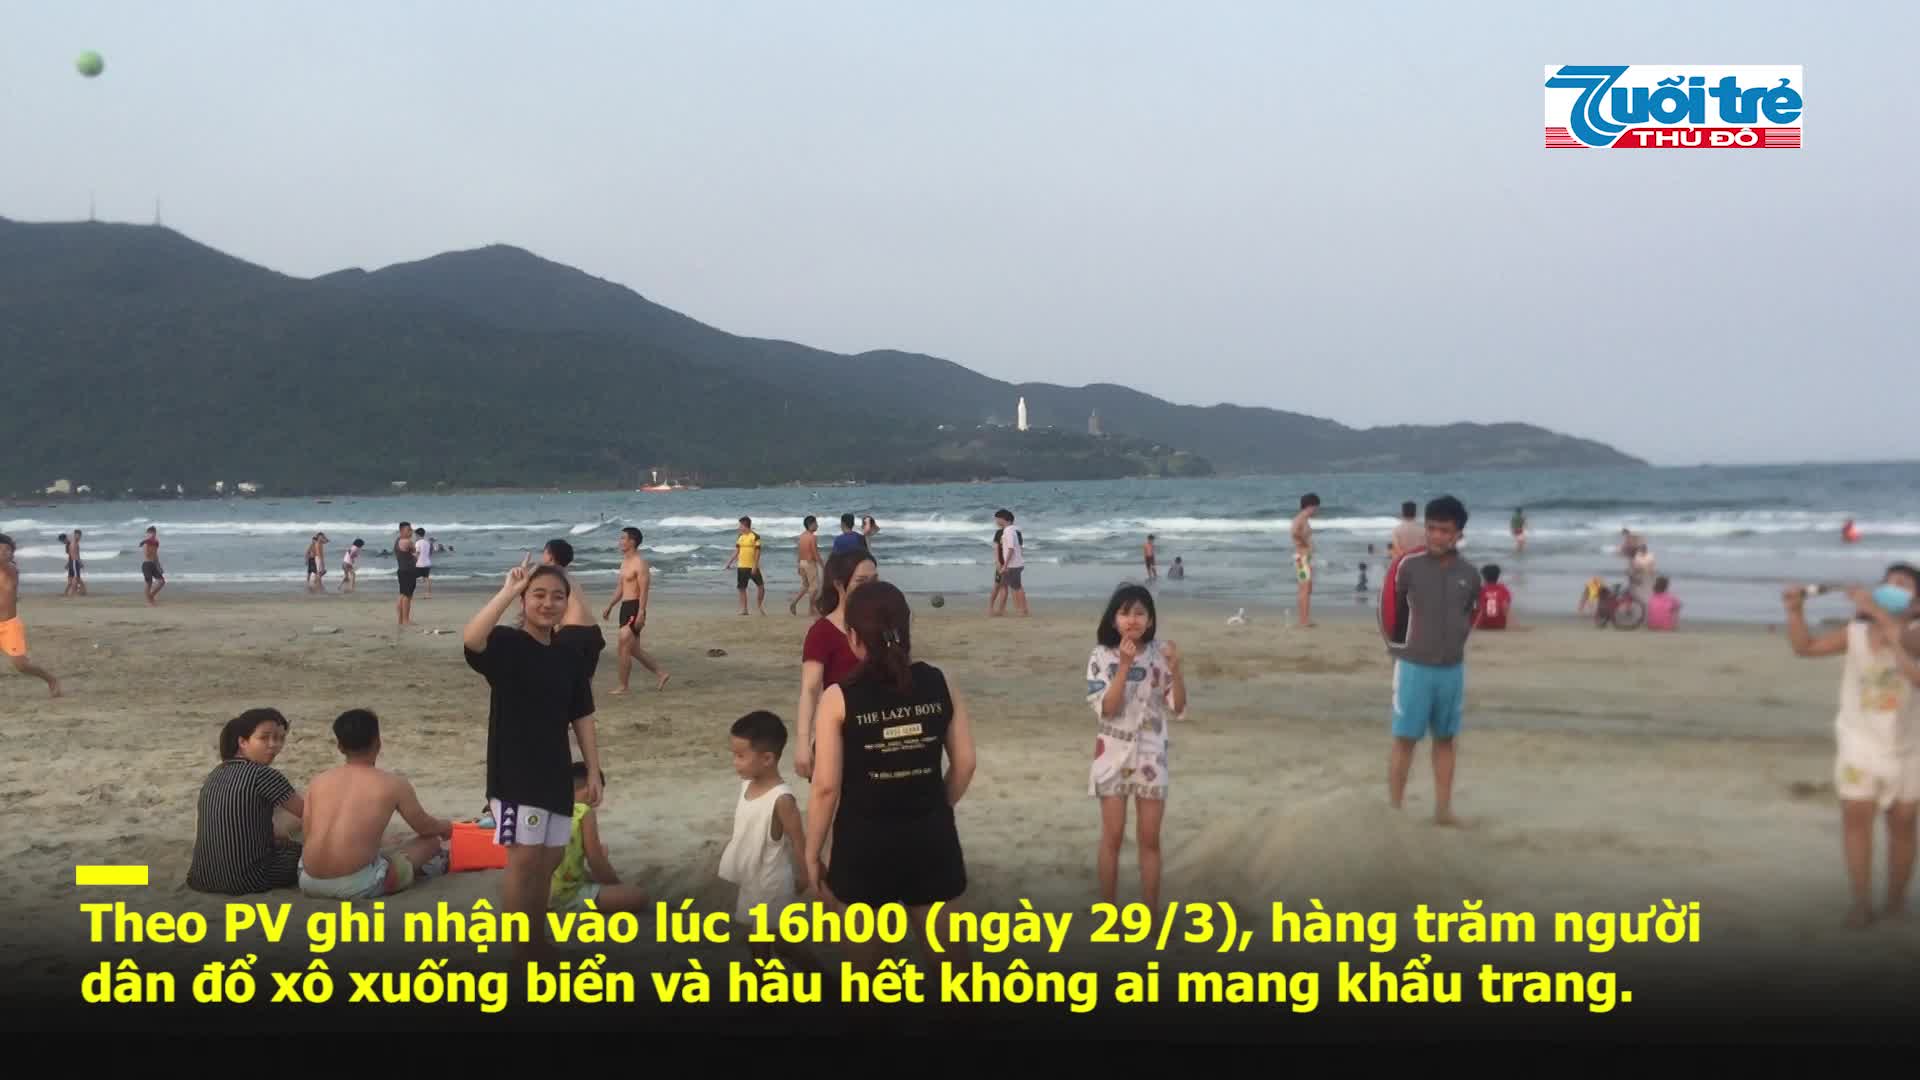 Bất chấp lệnh cấm, bãi biển Đà Nẵng vẫn đông người